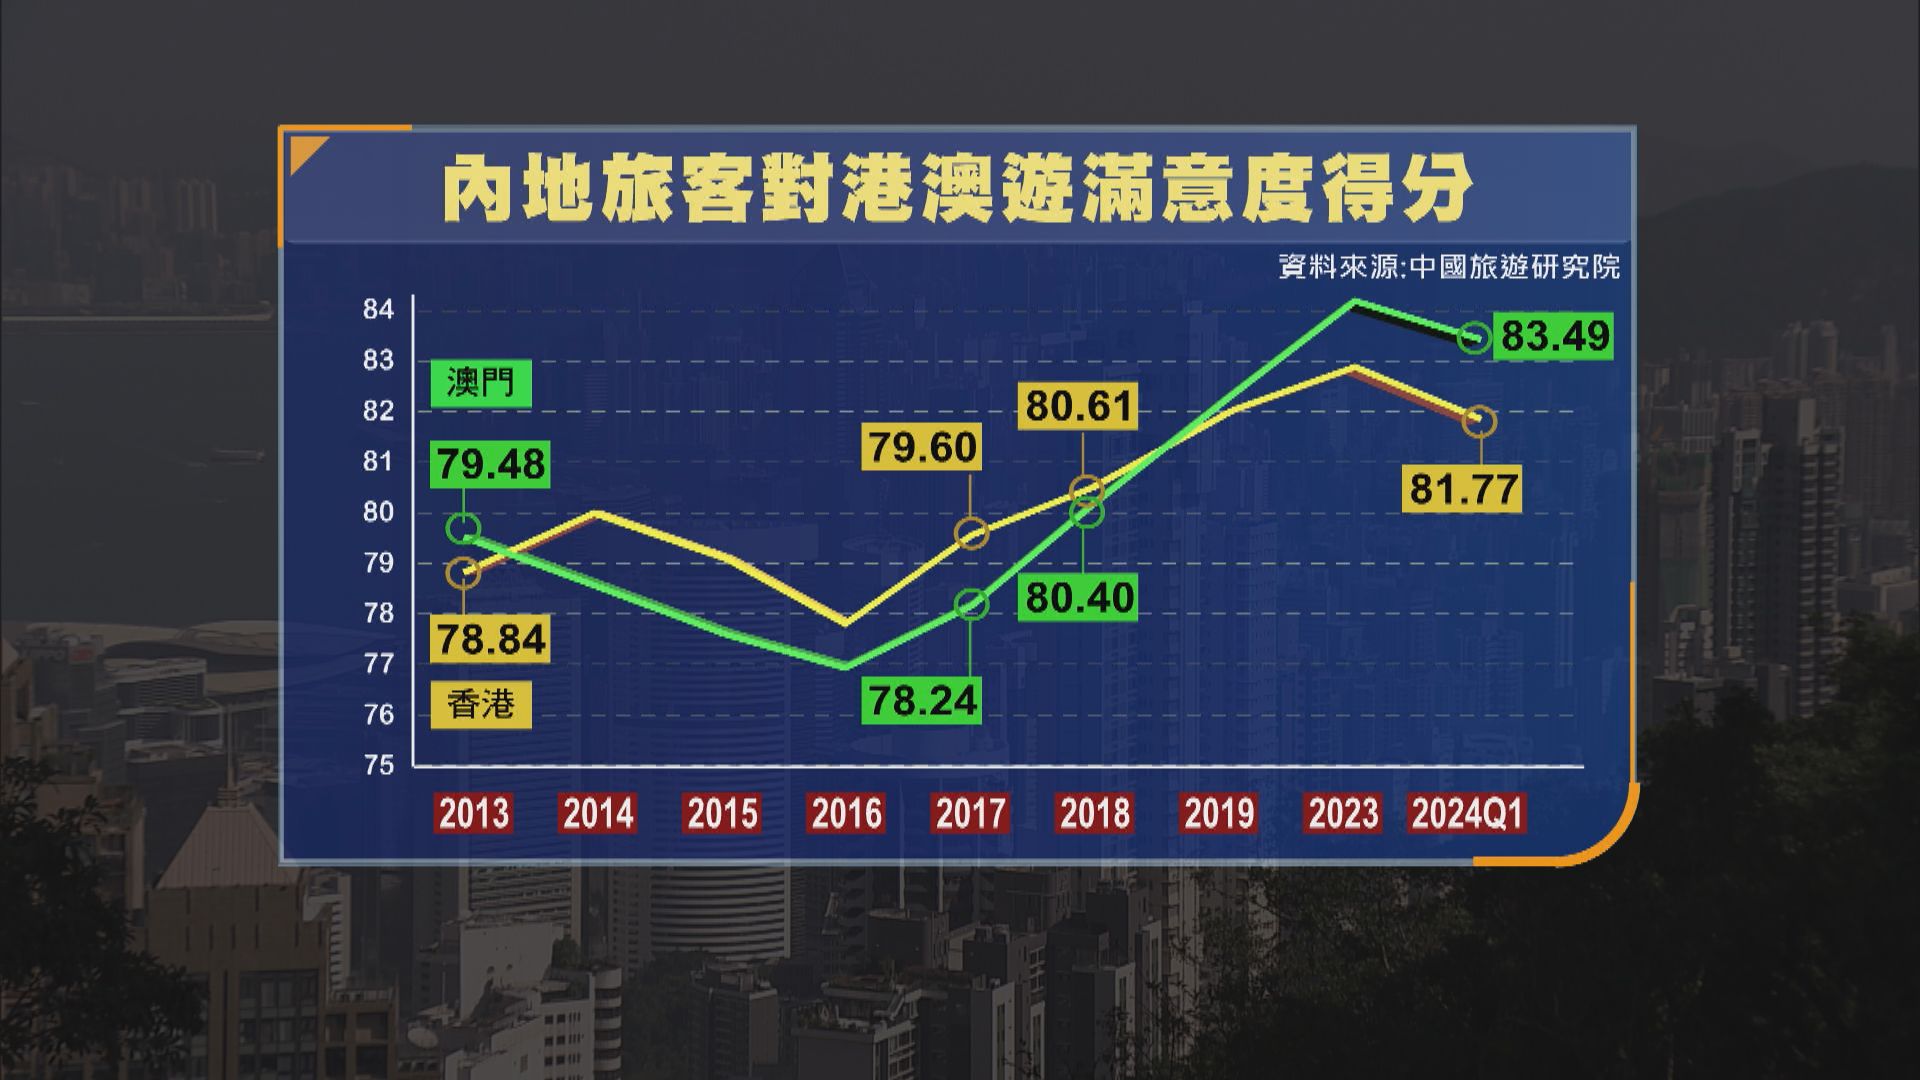 中國旅遊研究院出遊滿意度調查 澳門滿意度排名首位 香港跌至第七